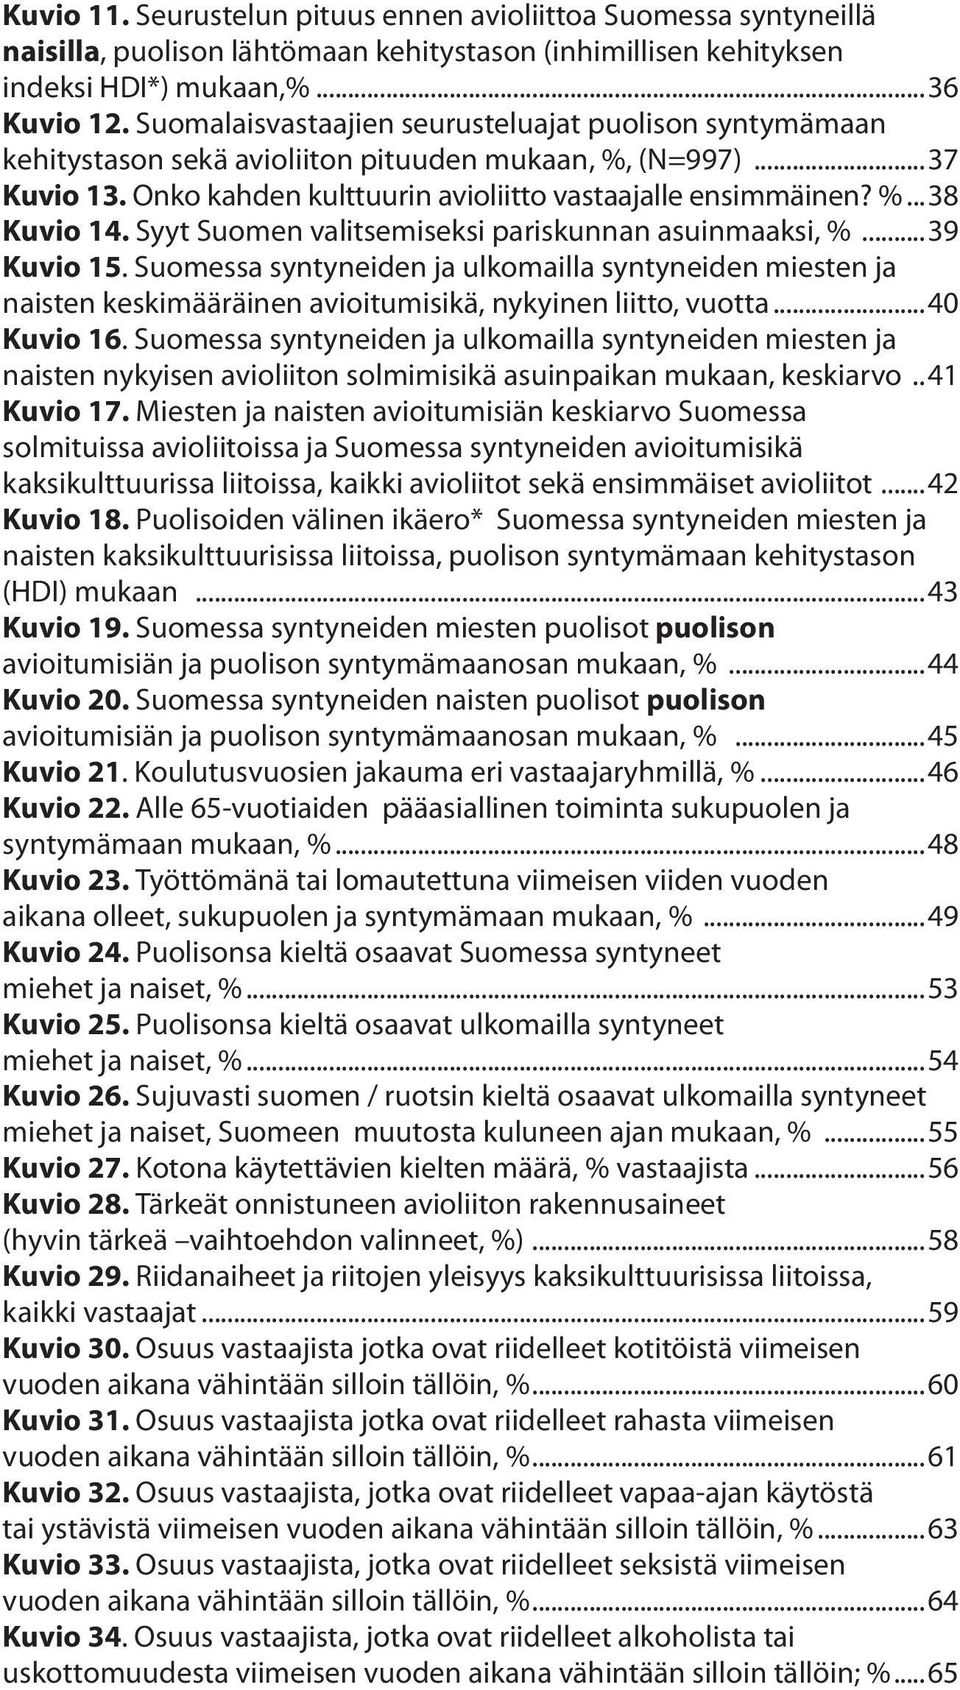 Syyt Suomen valitsemiseksi pariskunnan asuinmaaksi, %...39 Kuvio 15. Suomessa syntyneiden ja ulkomailla syntyneiden miesten ja naisten keskimääräinen avioitumisikä, nykyinen liitto, vuotta.